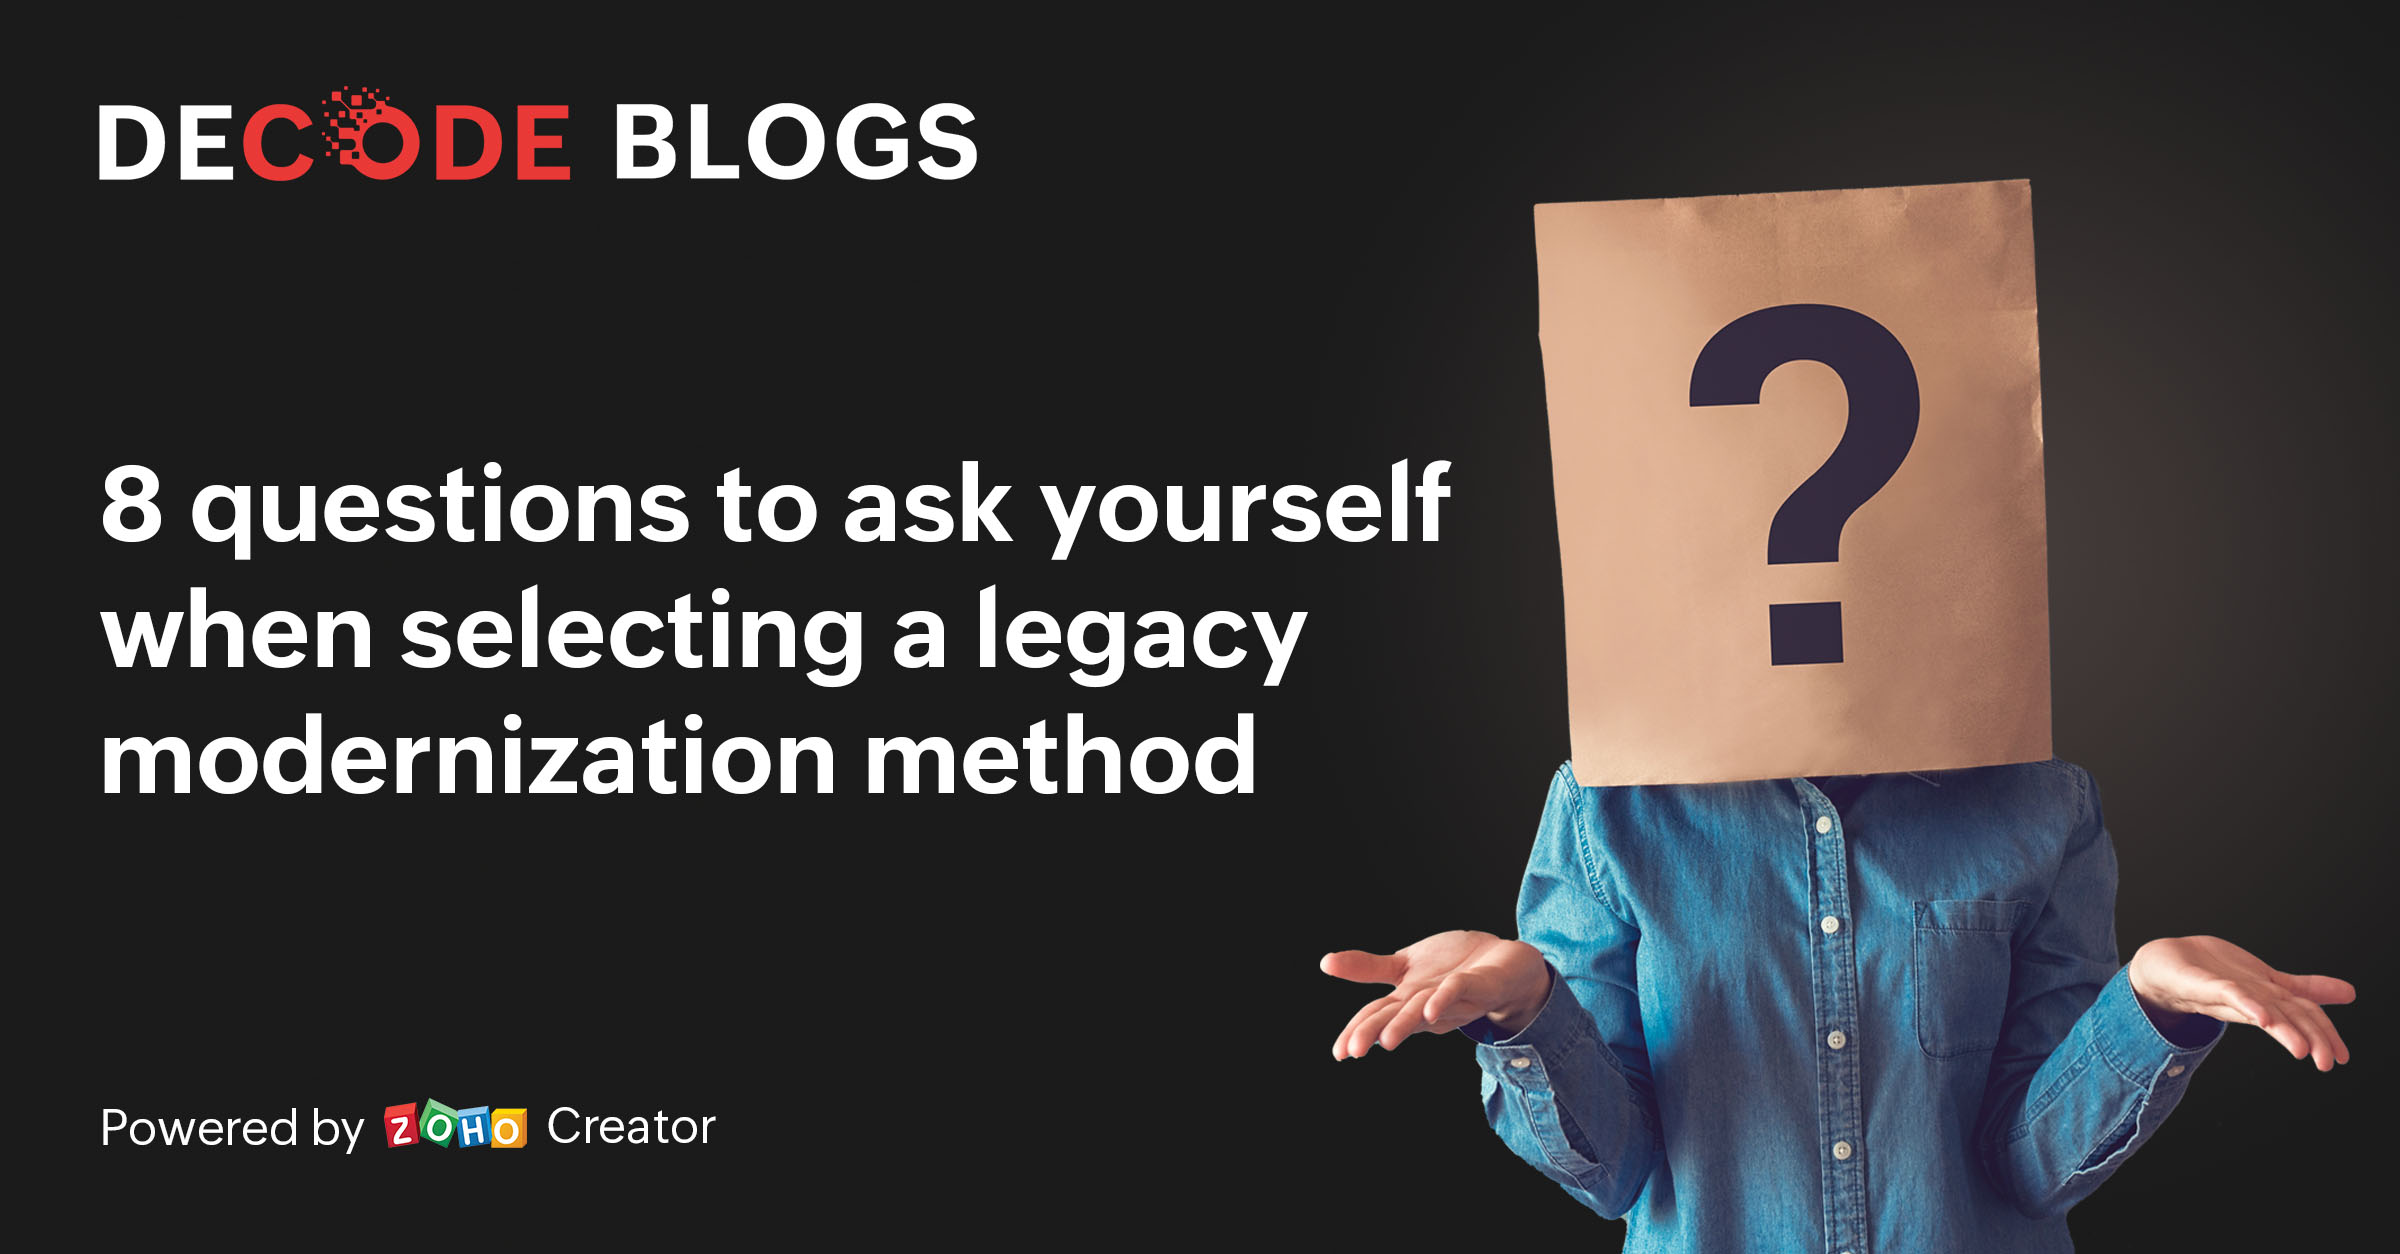 legacy modernization methodology